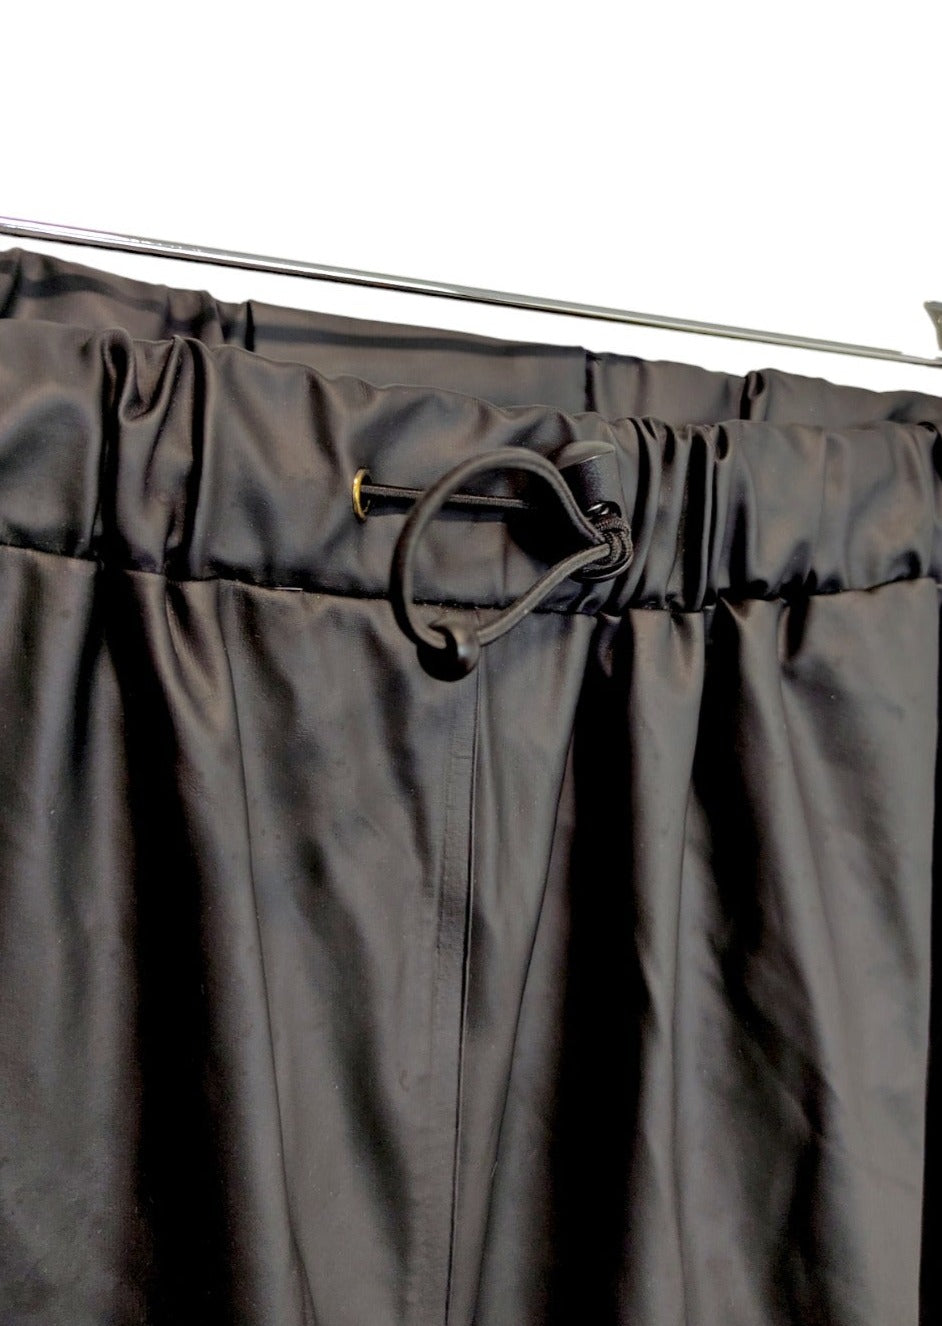 Γυναικείο αδιάβροχο παντελόνι εργασίας από Λάτεξ HELLY HANSEN σε Μαύρο χρώμα (S/M)